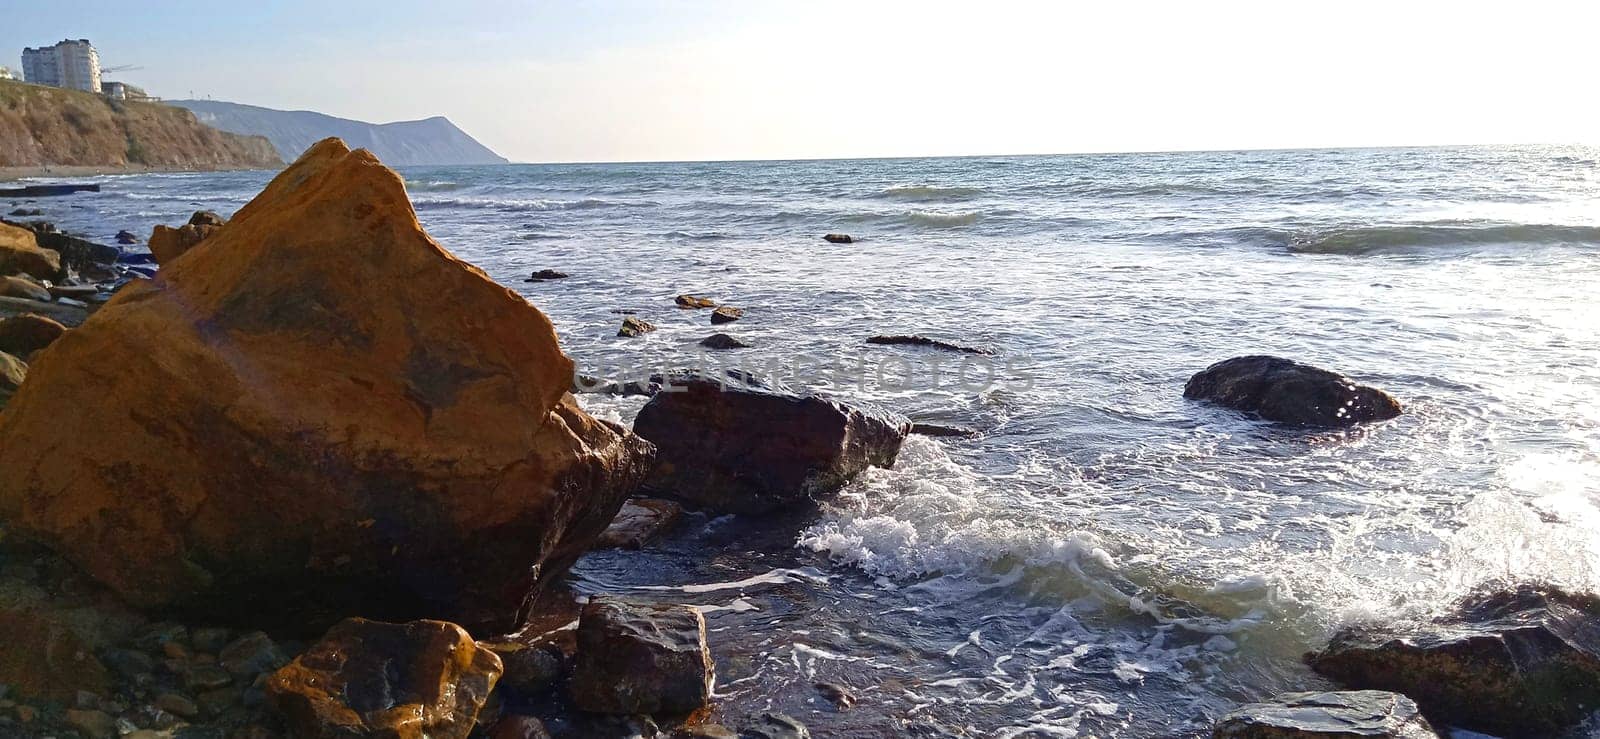 Rocky coastal landscape scene at shore of ocean by fireFLYart